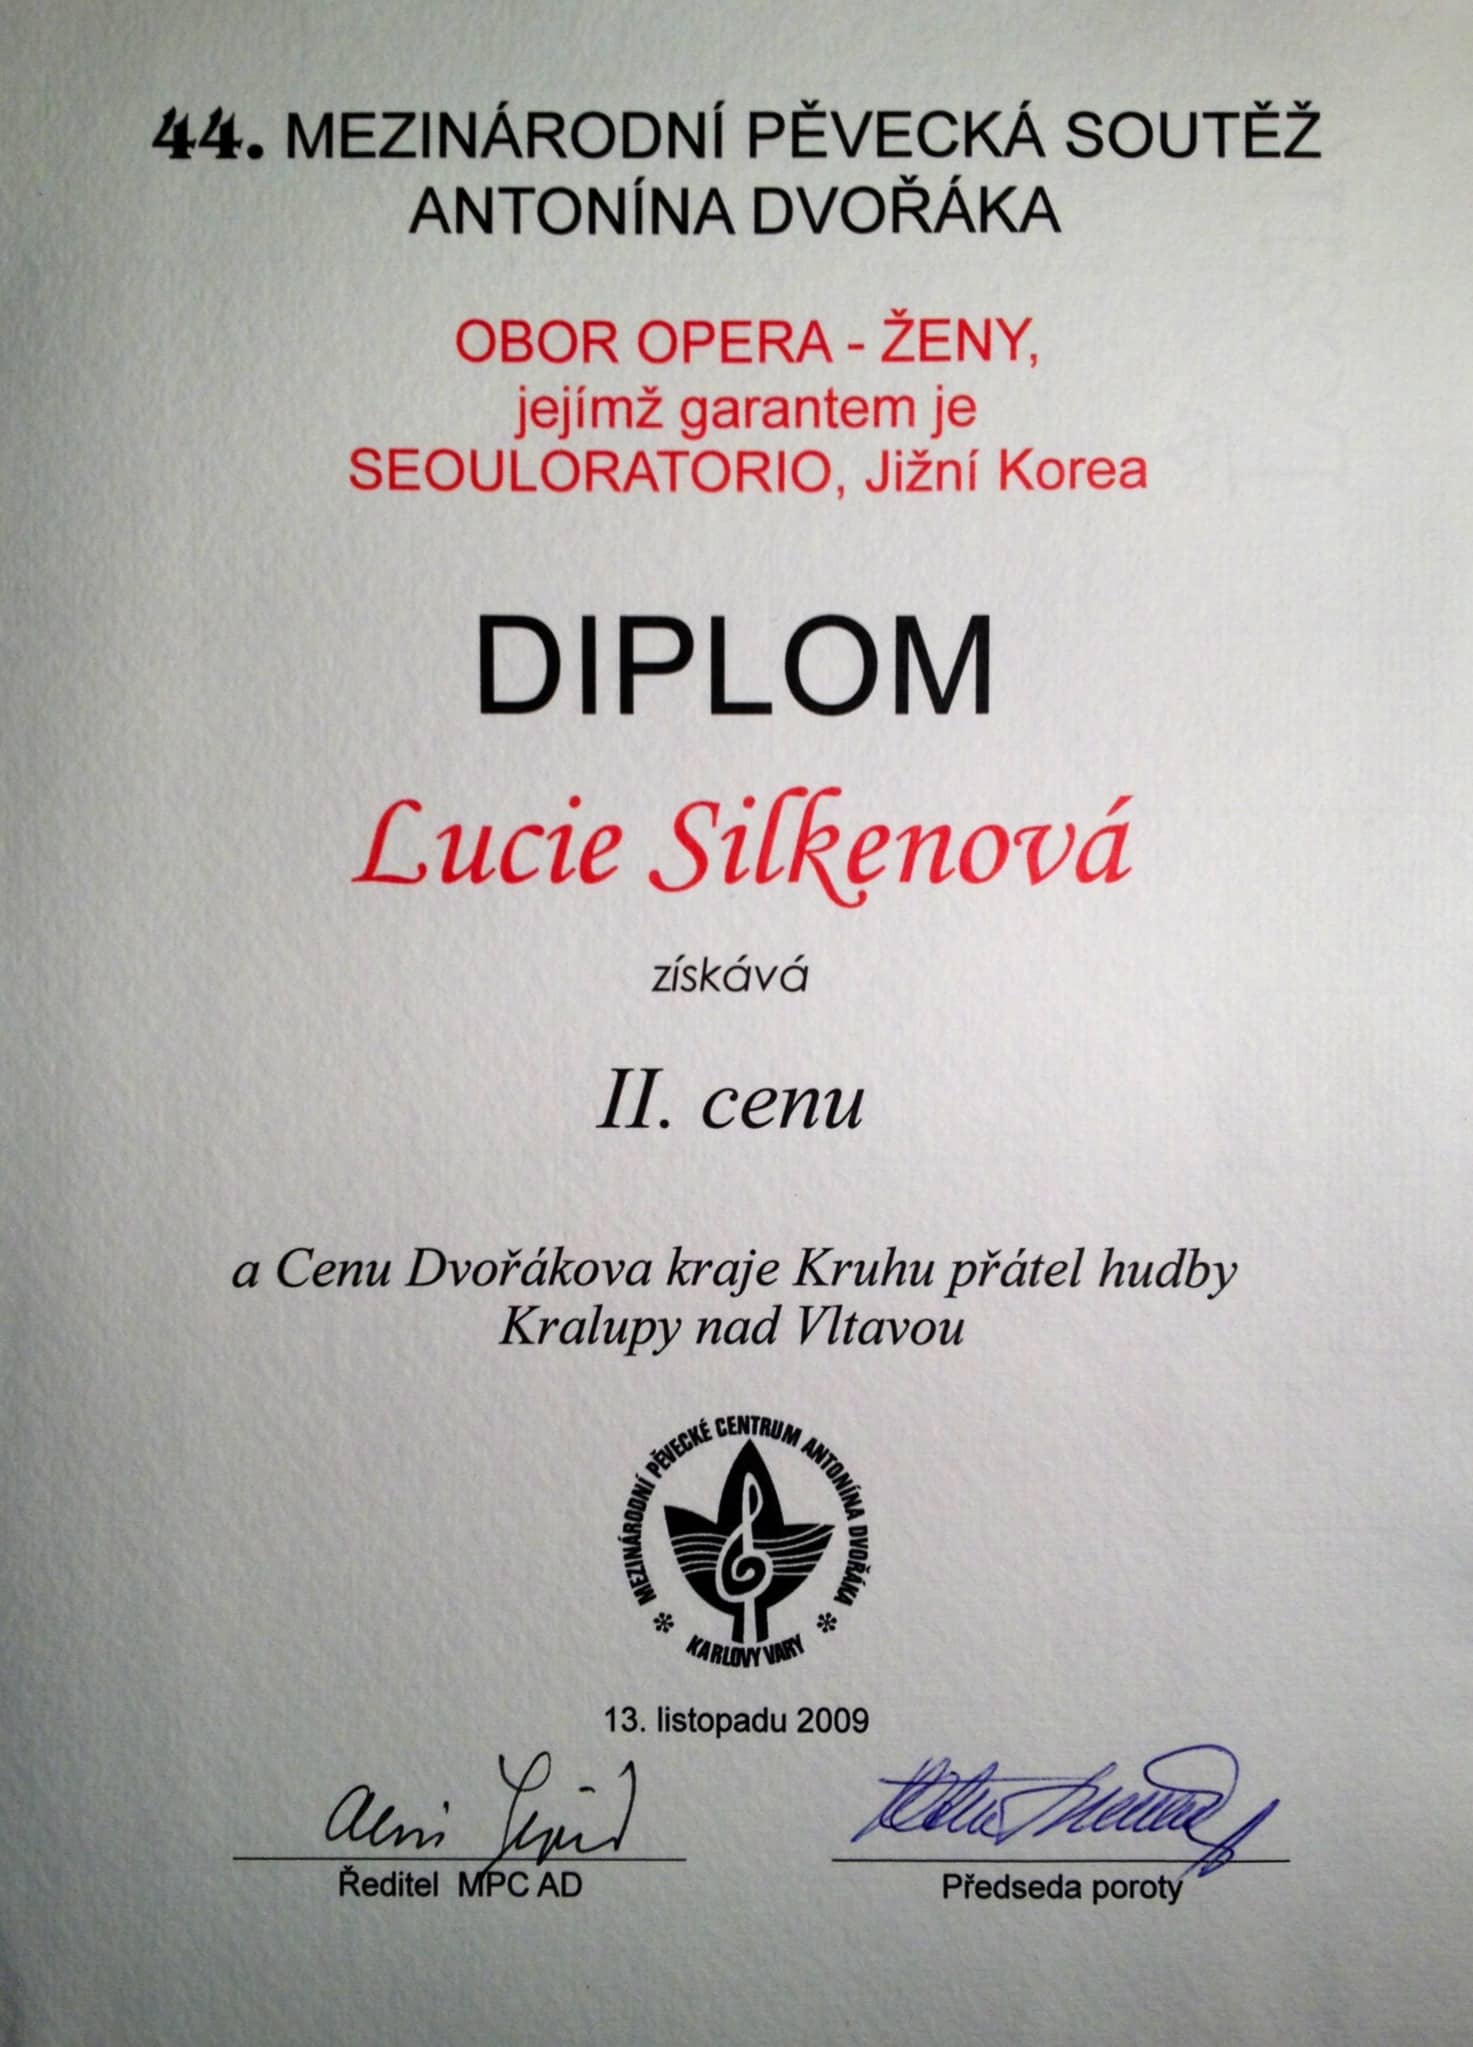 Lucie Silkenová - diplom